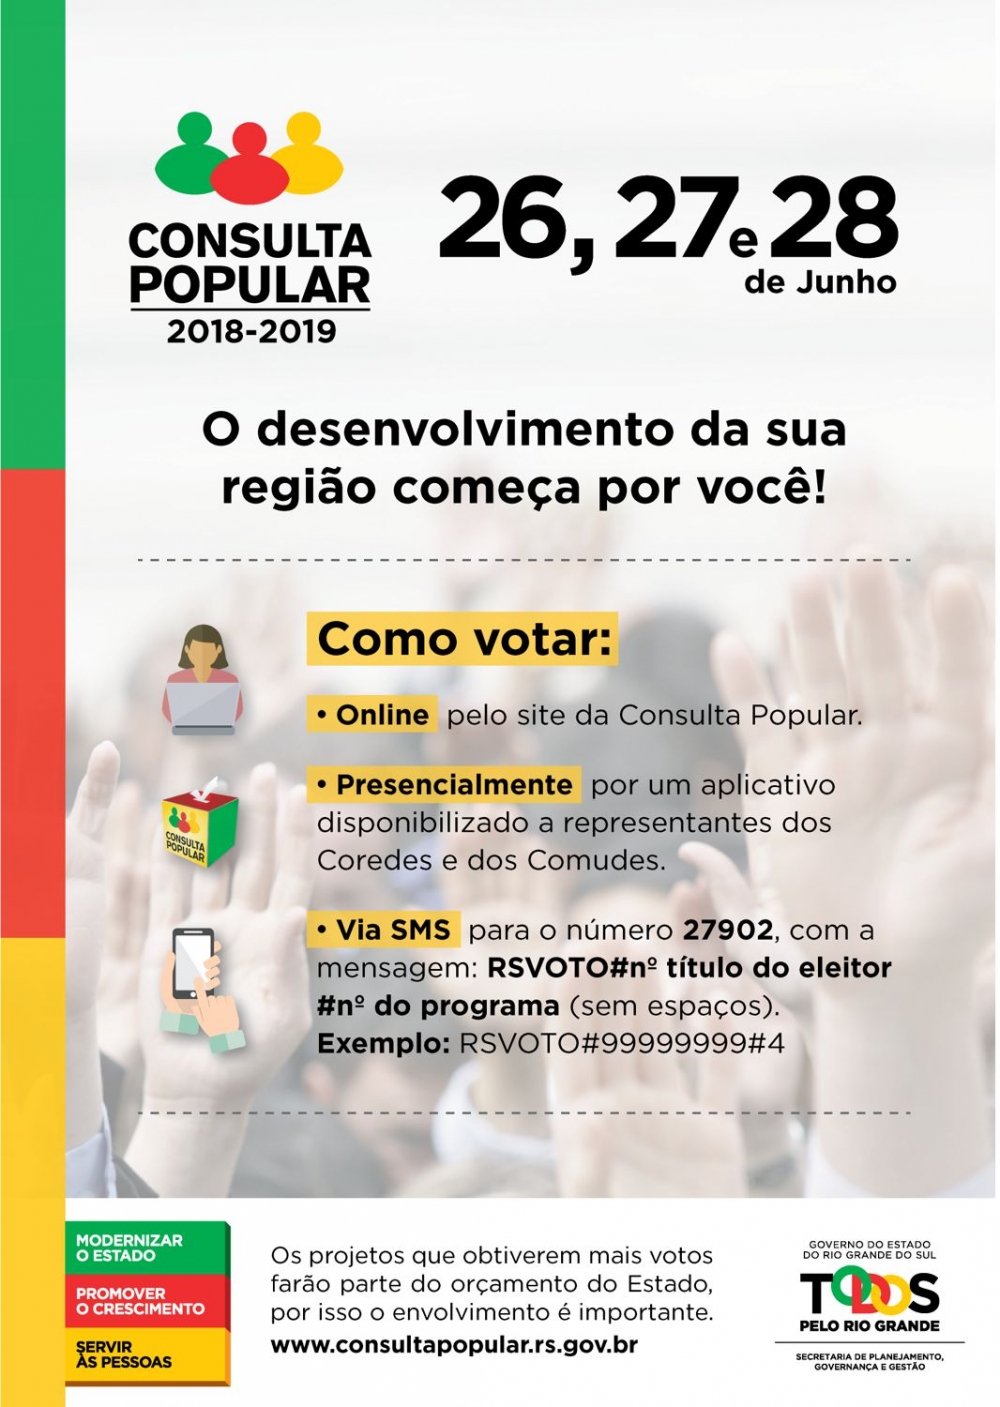 Saiba como votar na Consulta Popular que ocorre no fim do mês